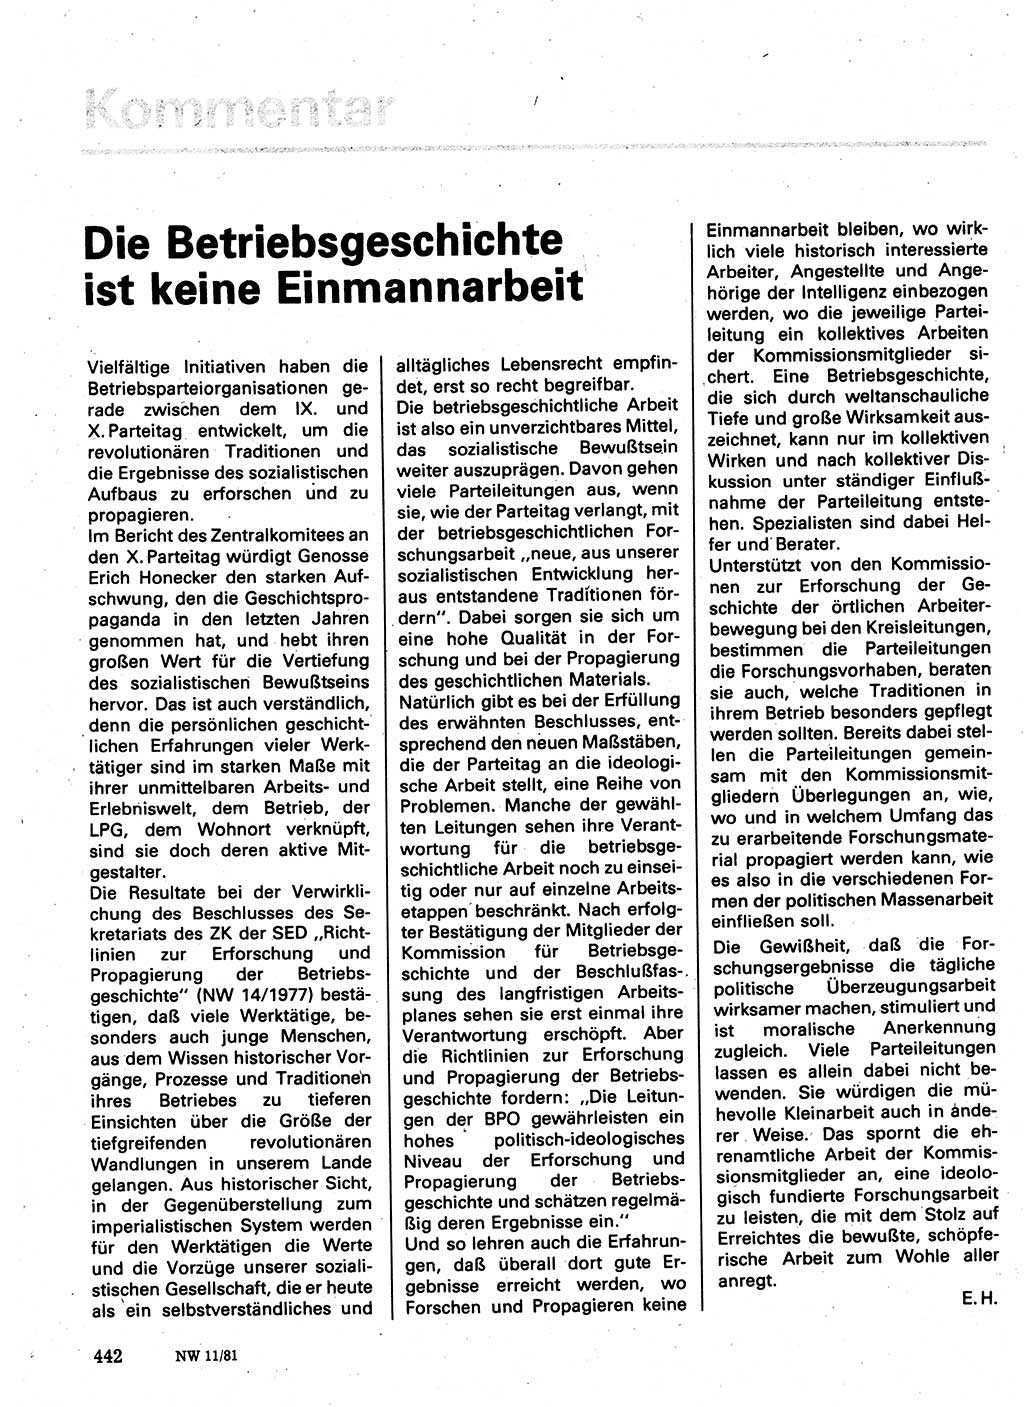 Neuer Weg (NW), Organ des Zentralkomitees (ZK) der SED (Sozialistische Einheitspartei Deutschlands) für Fragen des Parteilebens, 36. Jahrgang [Deutsche Demokratische Republik (DDR)] 1981, Seite 442 (NW ZK SED DDR 1981, S. 442)